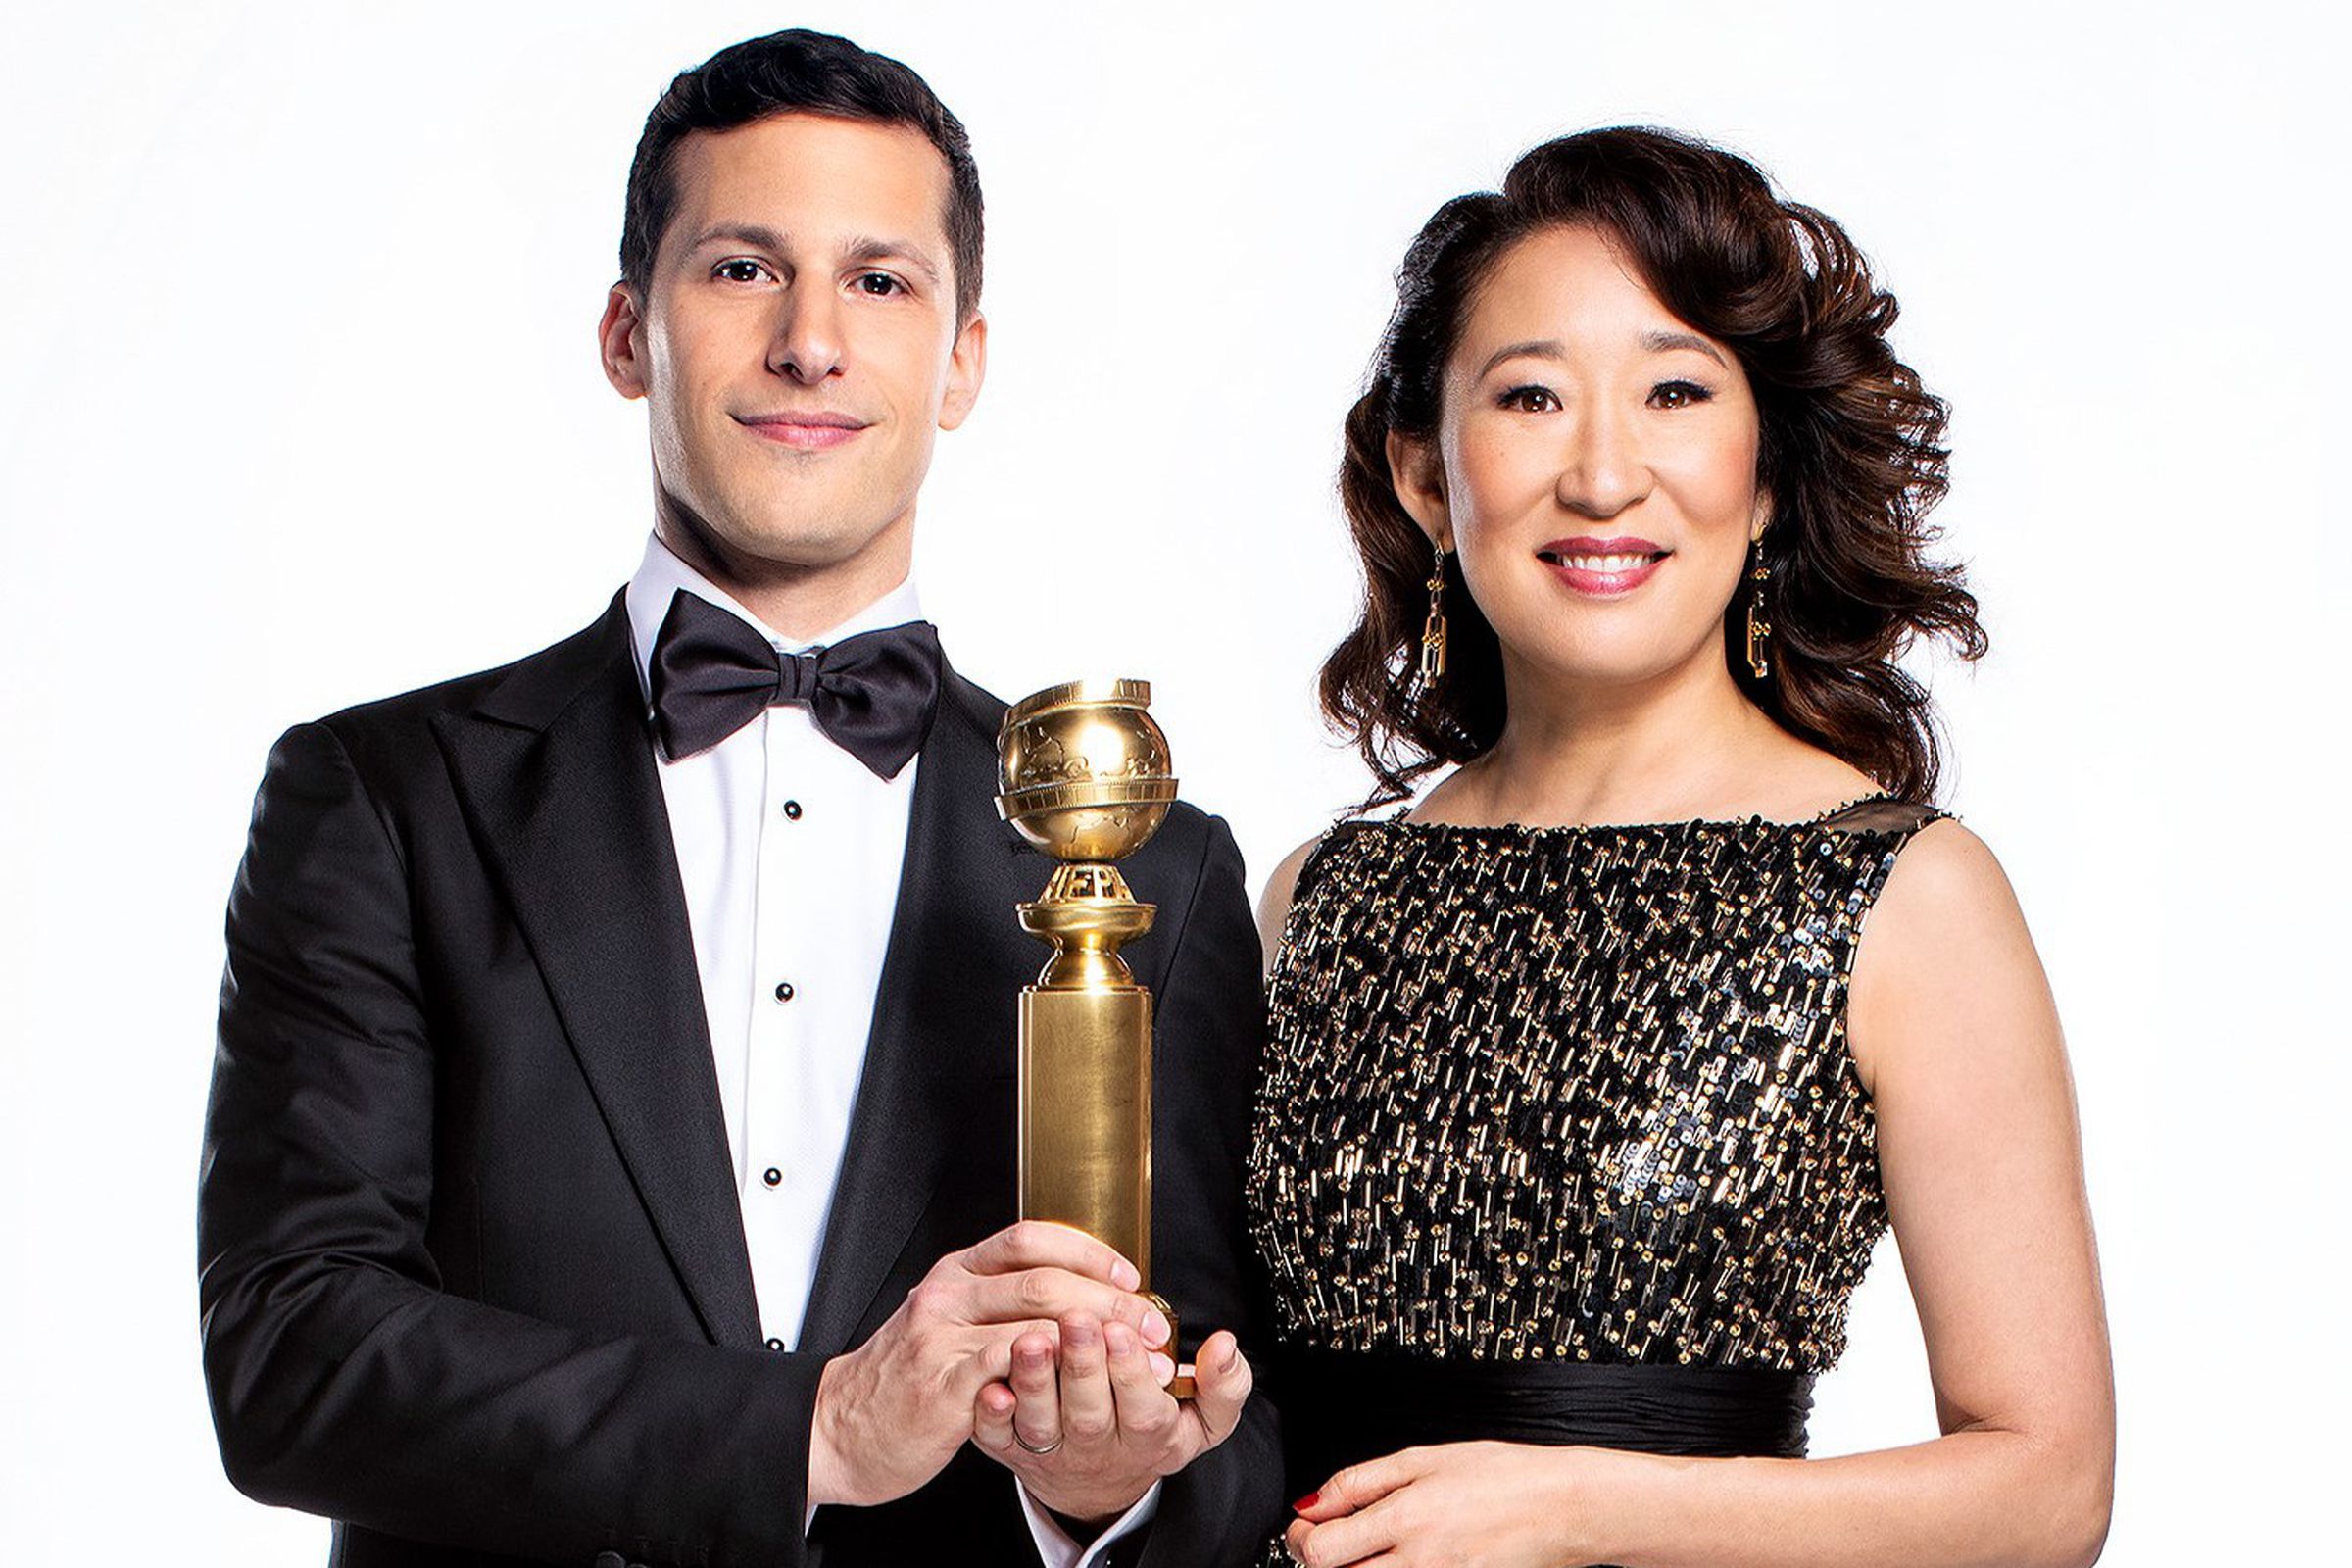 Andy Samberg and Sandra Oh will host the 76th Golden Globe awards